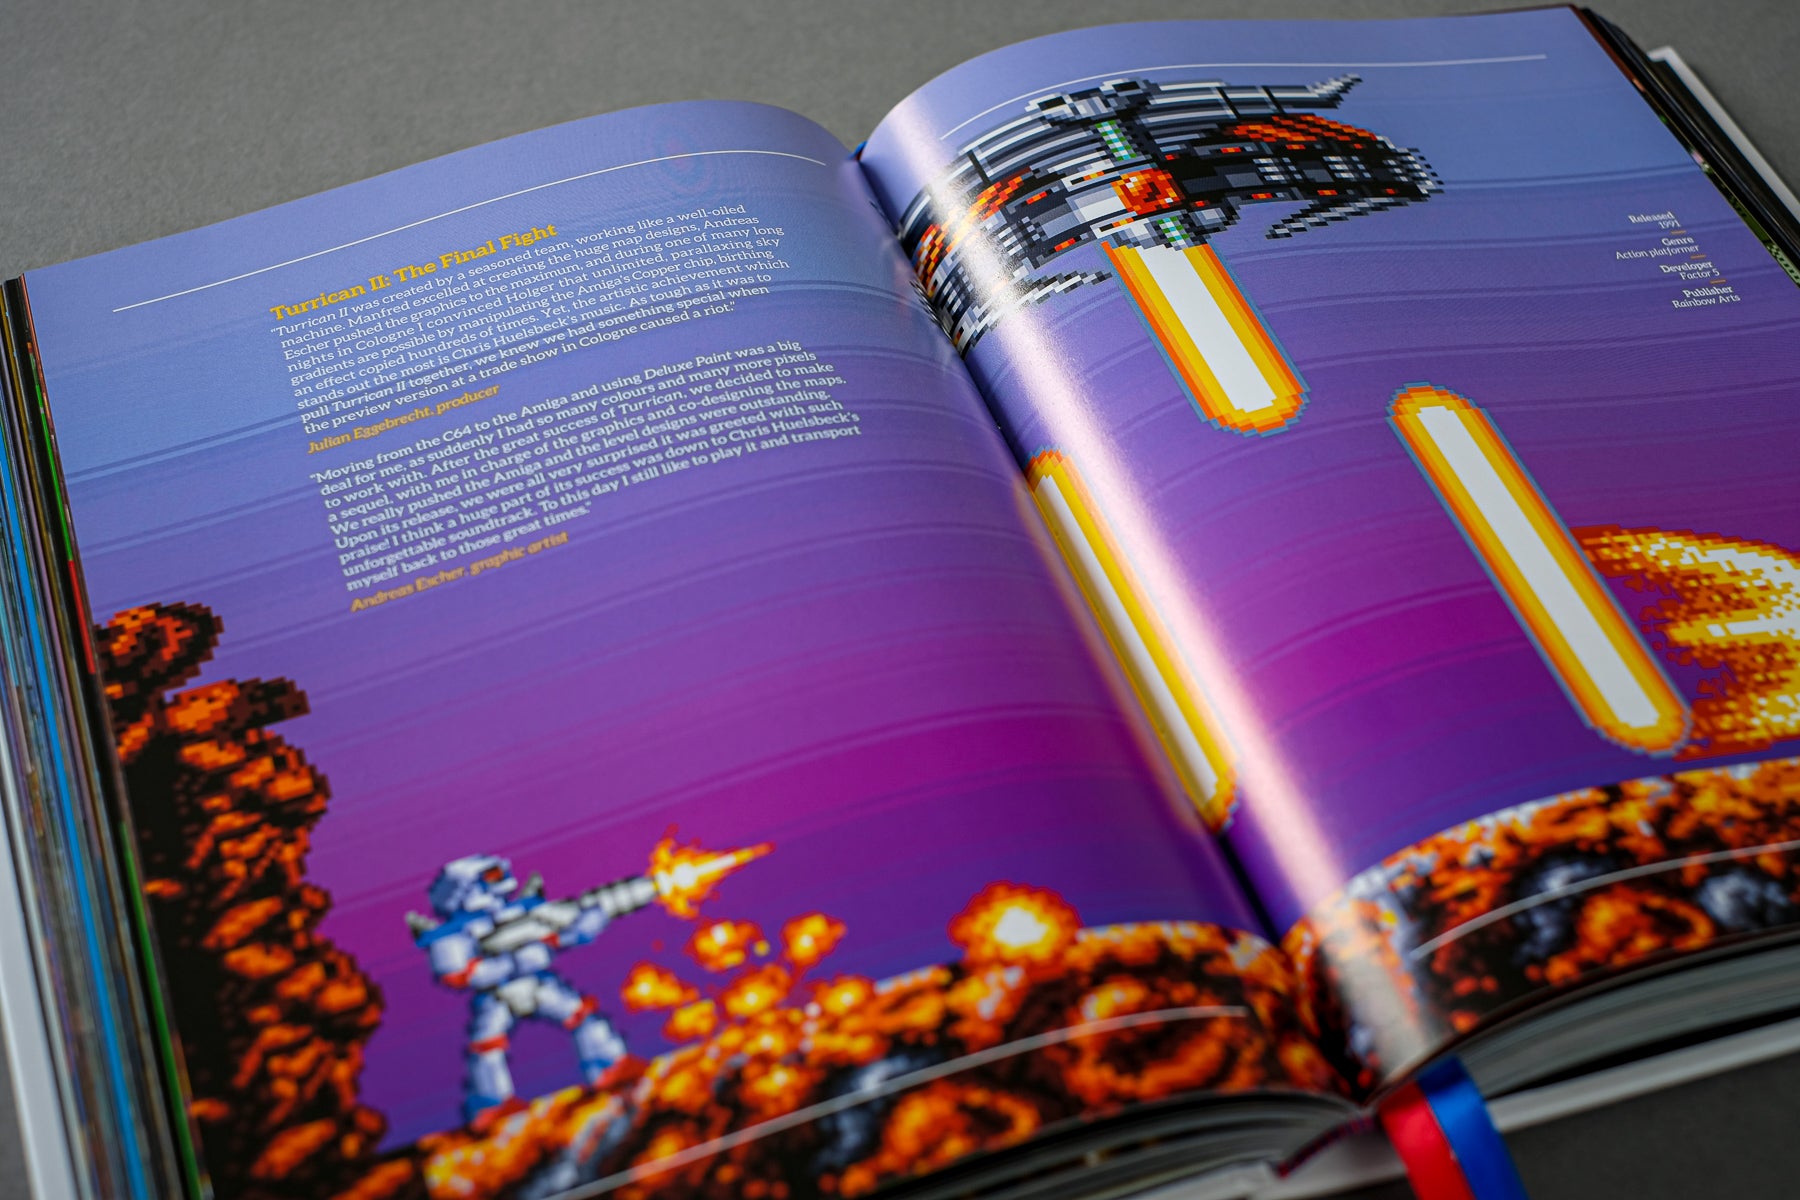 Commodore Amiga: a visual compendium